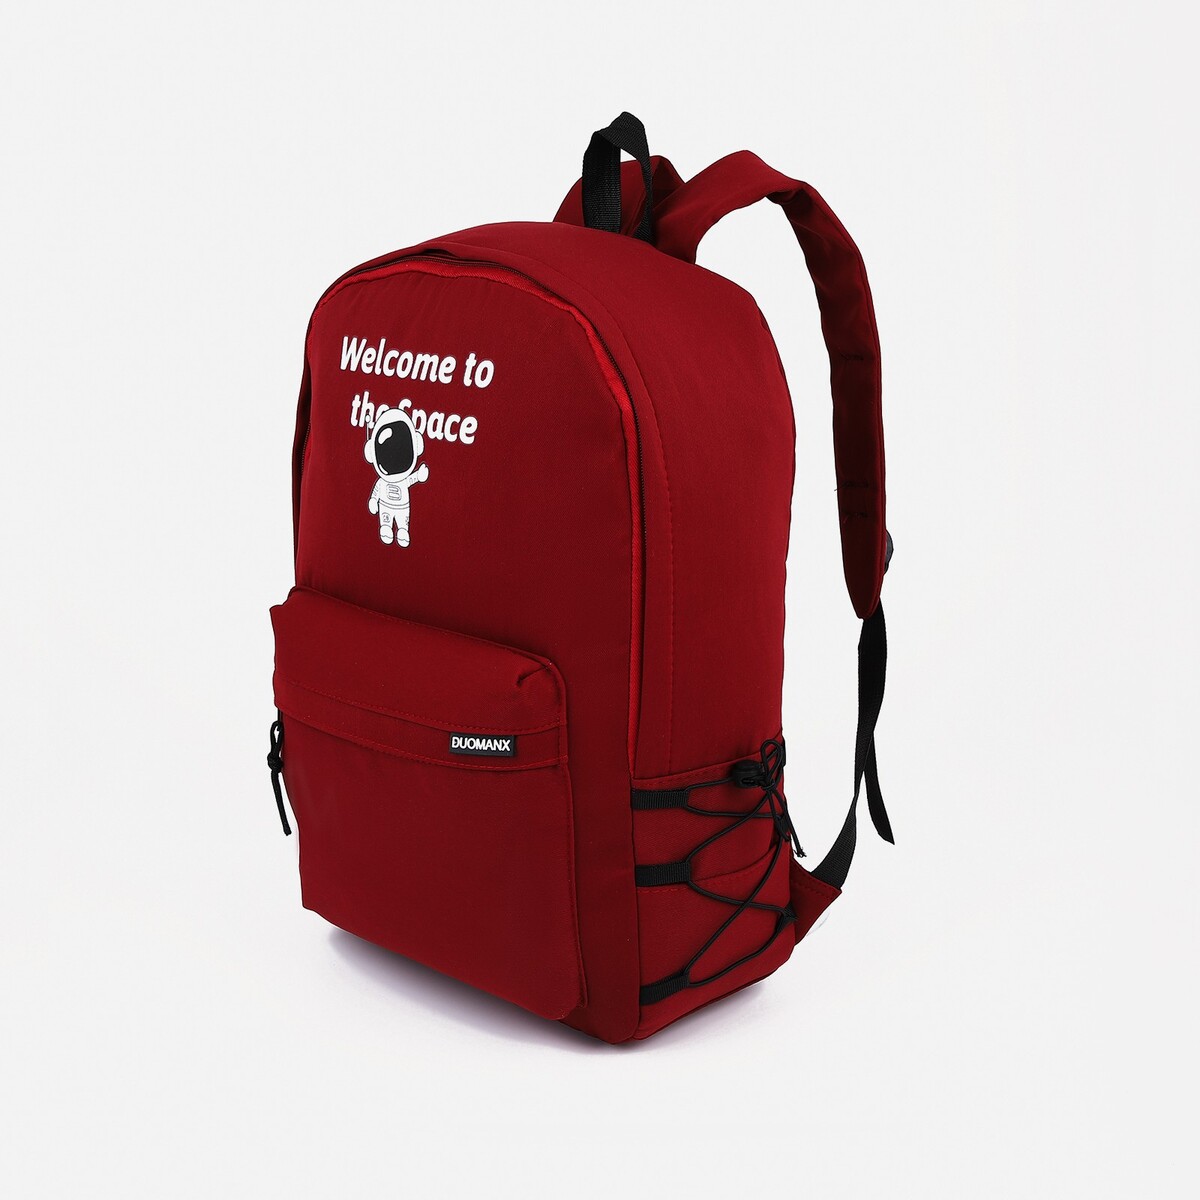 Рюкзак школьный из текстиля на молнии, 3 кармана, цвет бордовый рюкзак wenger urban contemporary 605024 14 бордовый 14 л